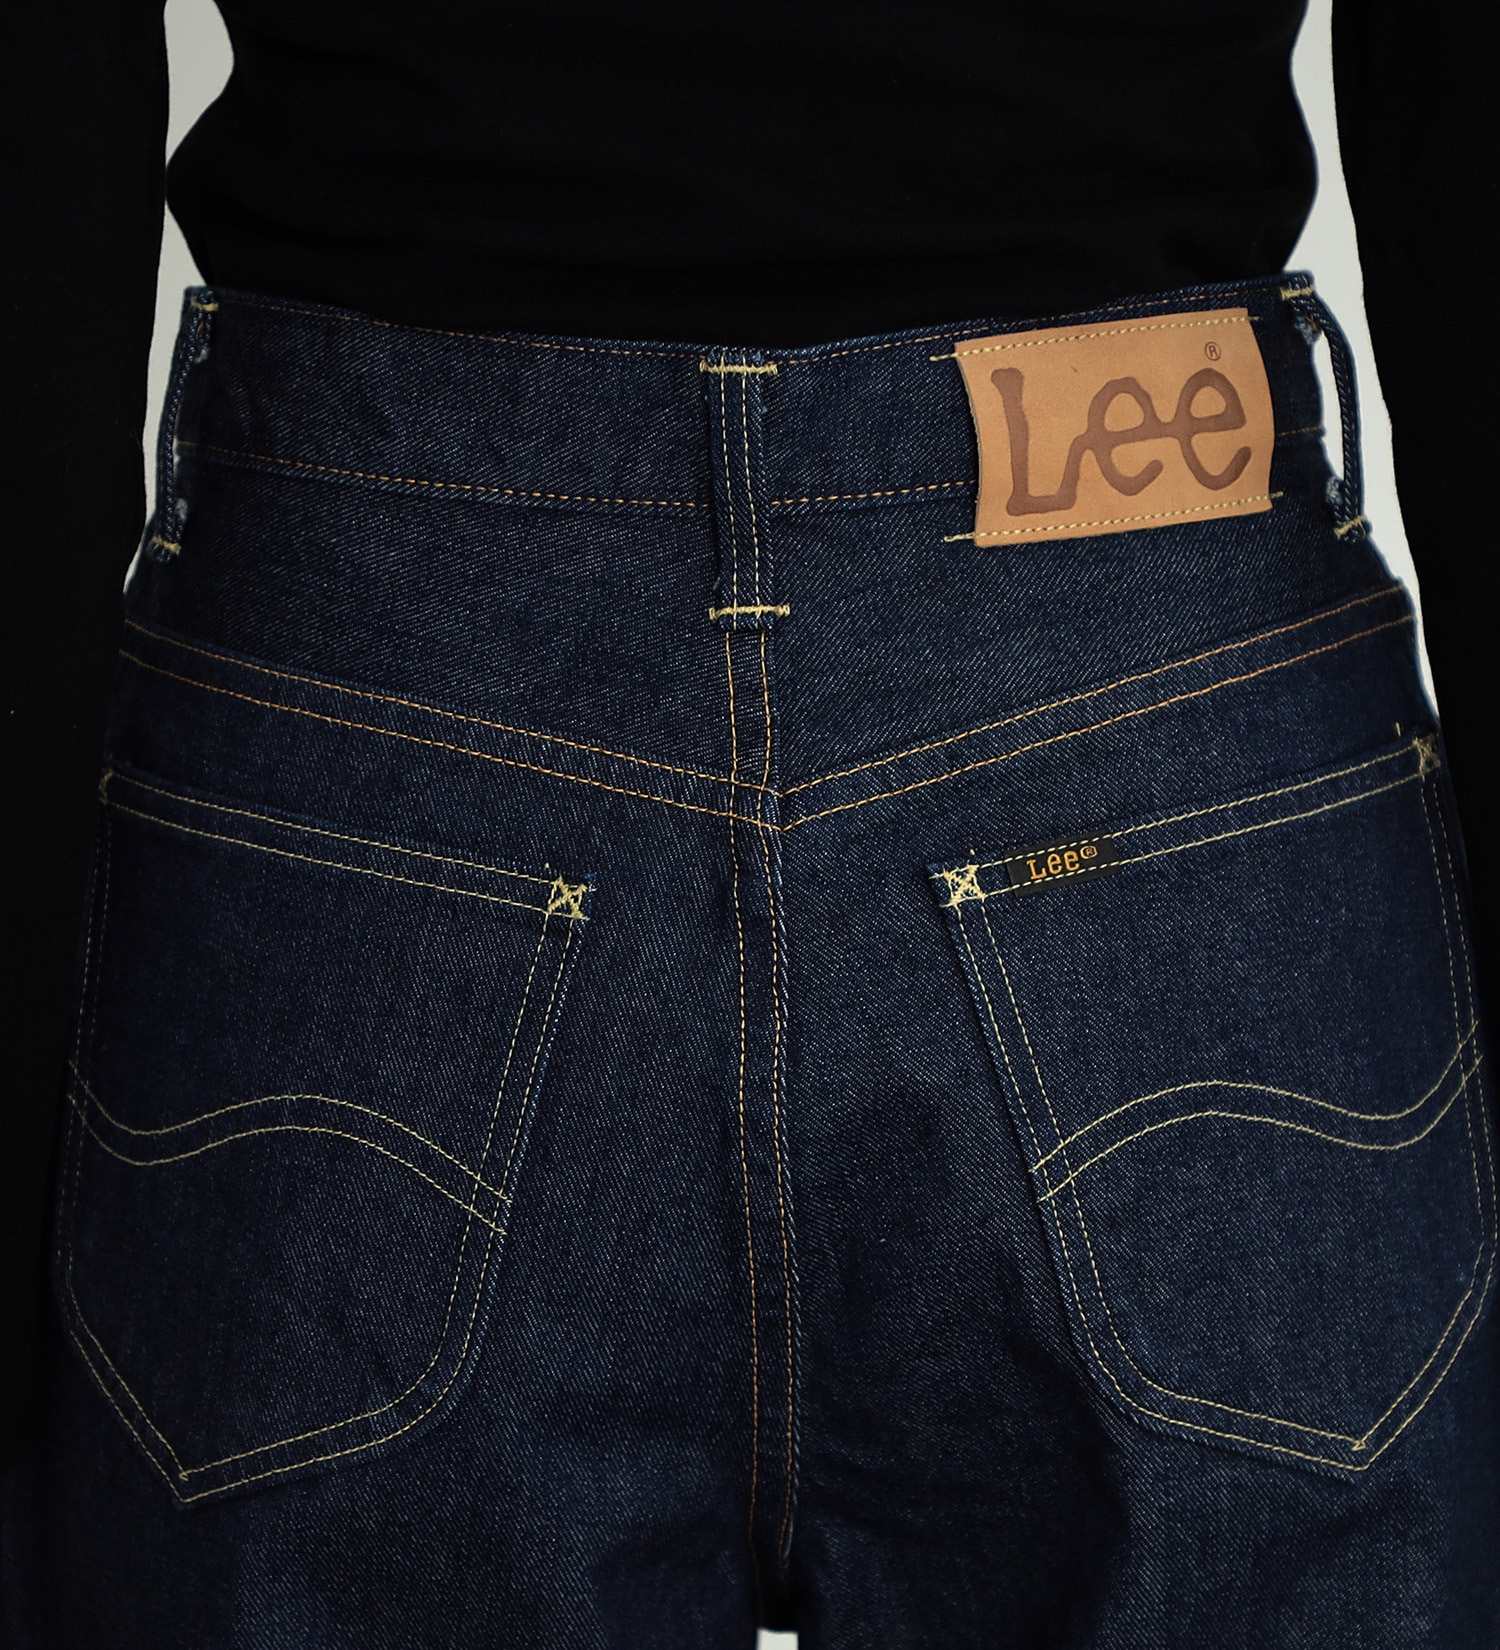 Lee(リー)の【試着対象】STANDARD WARDROBE テーパード|パンツ/デニムパンツ/レディース|インディゴブルー